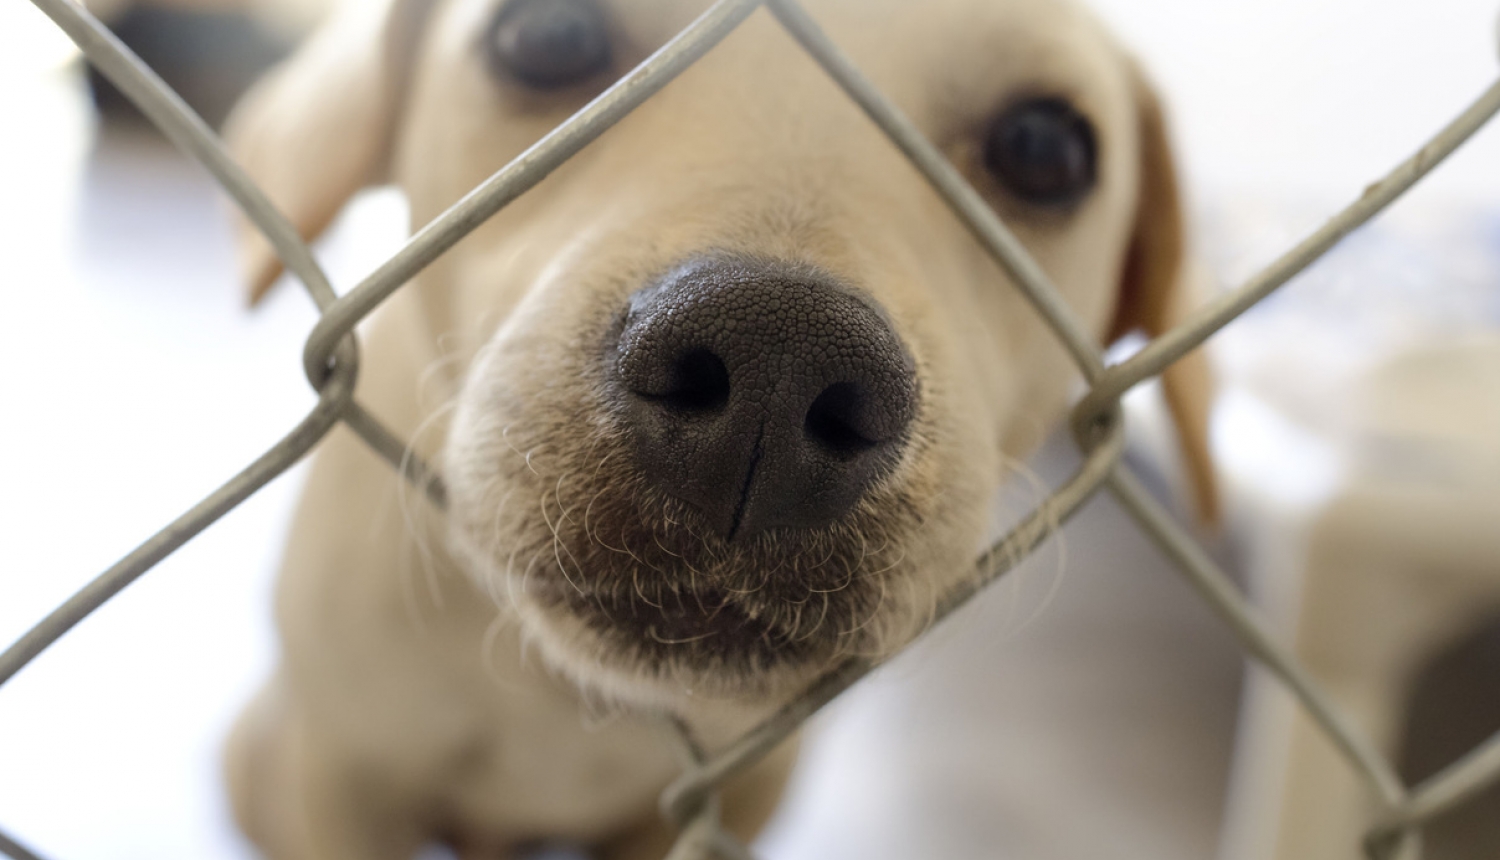 Suņa apzīmēšana un reģistrācija veicama līdz četru mēnešu vecumam vai agrāk, ja suns tiek atsavināts pastāvīgai turēšanai ārzemēs